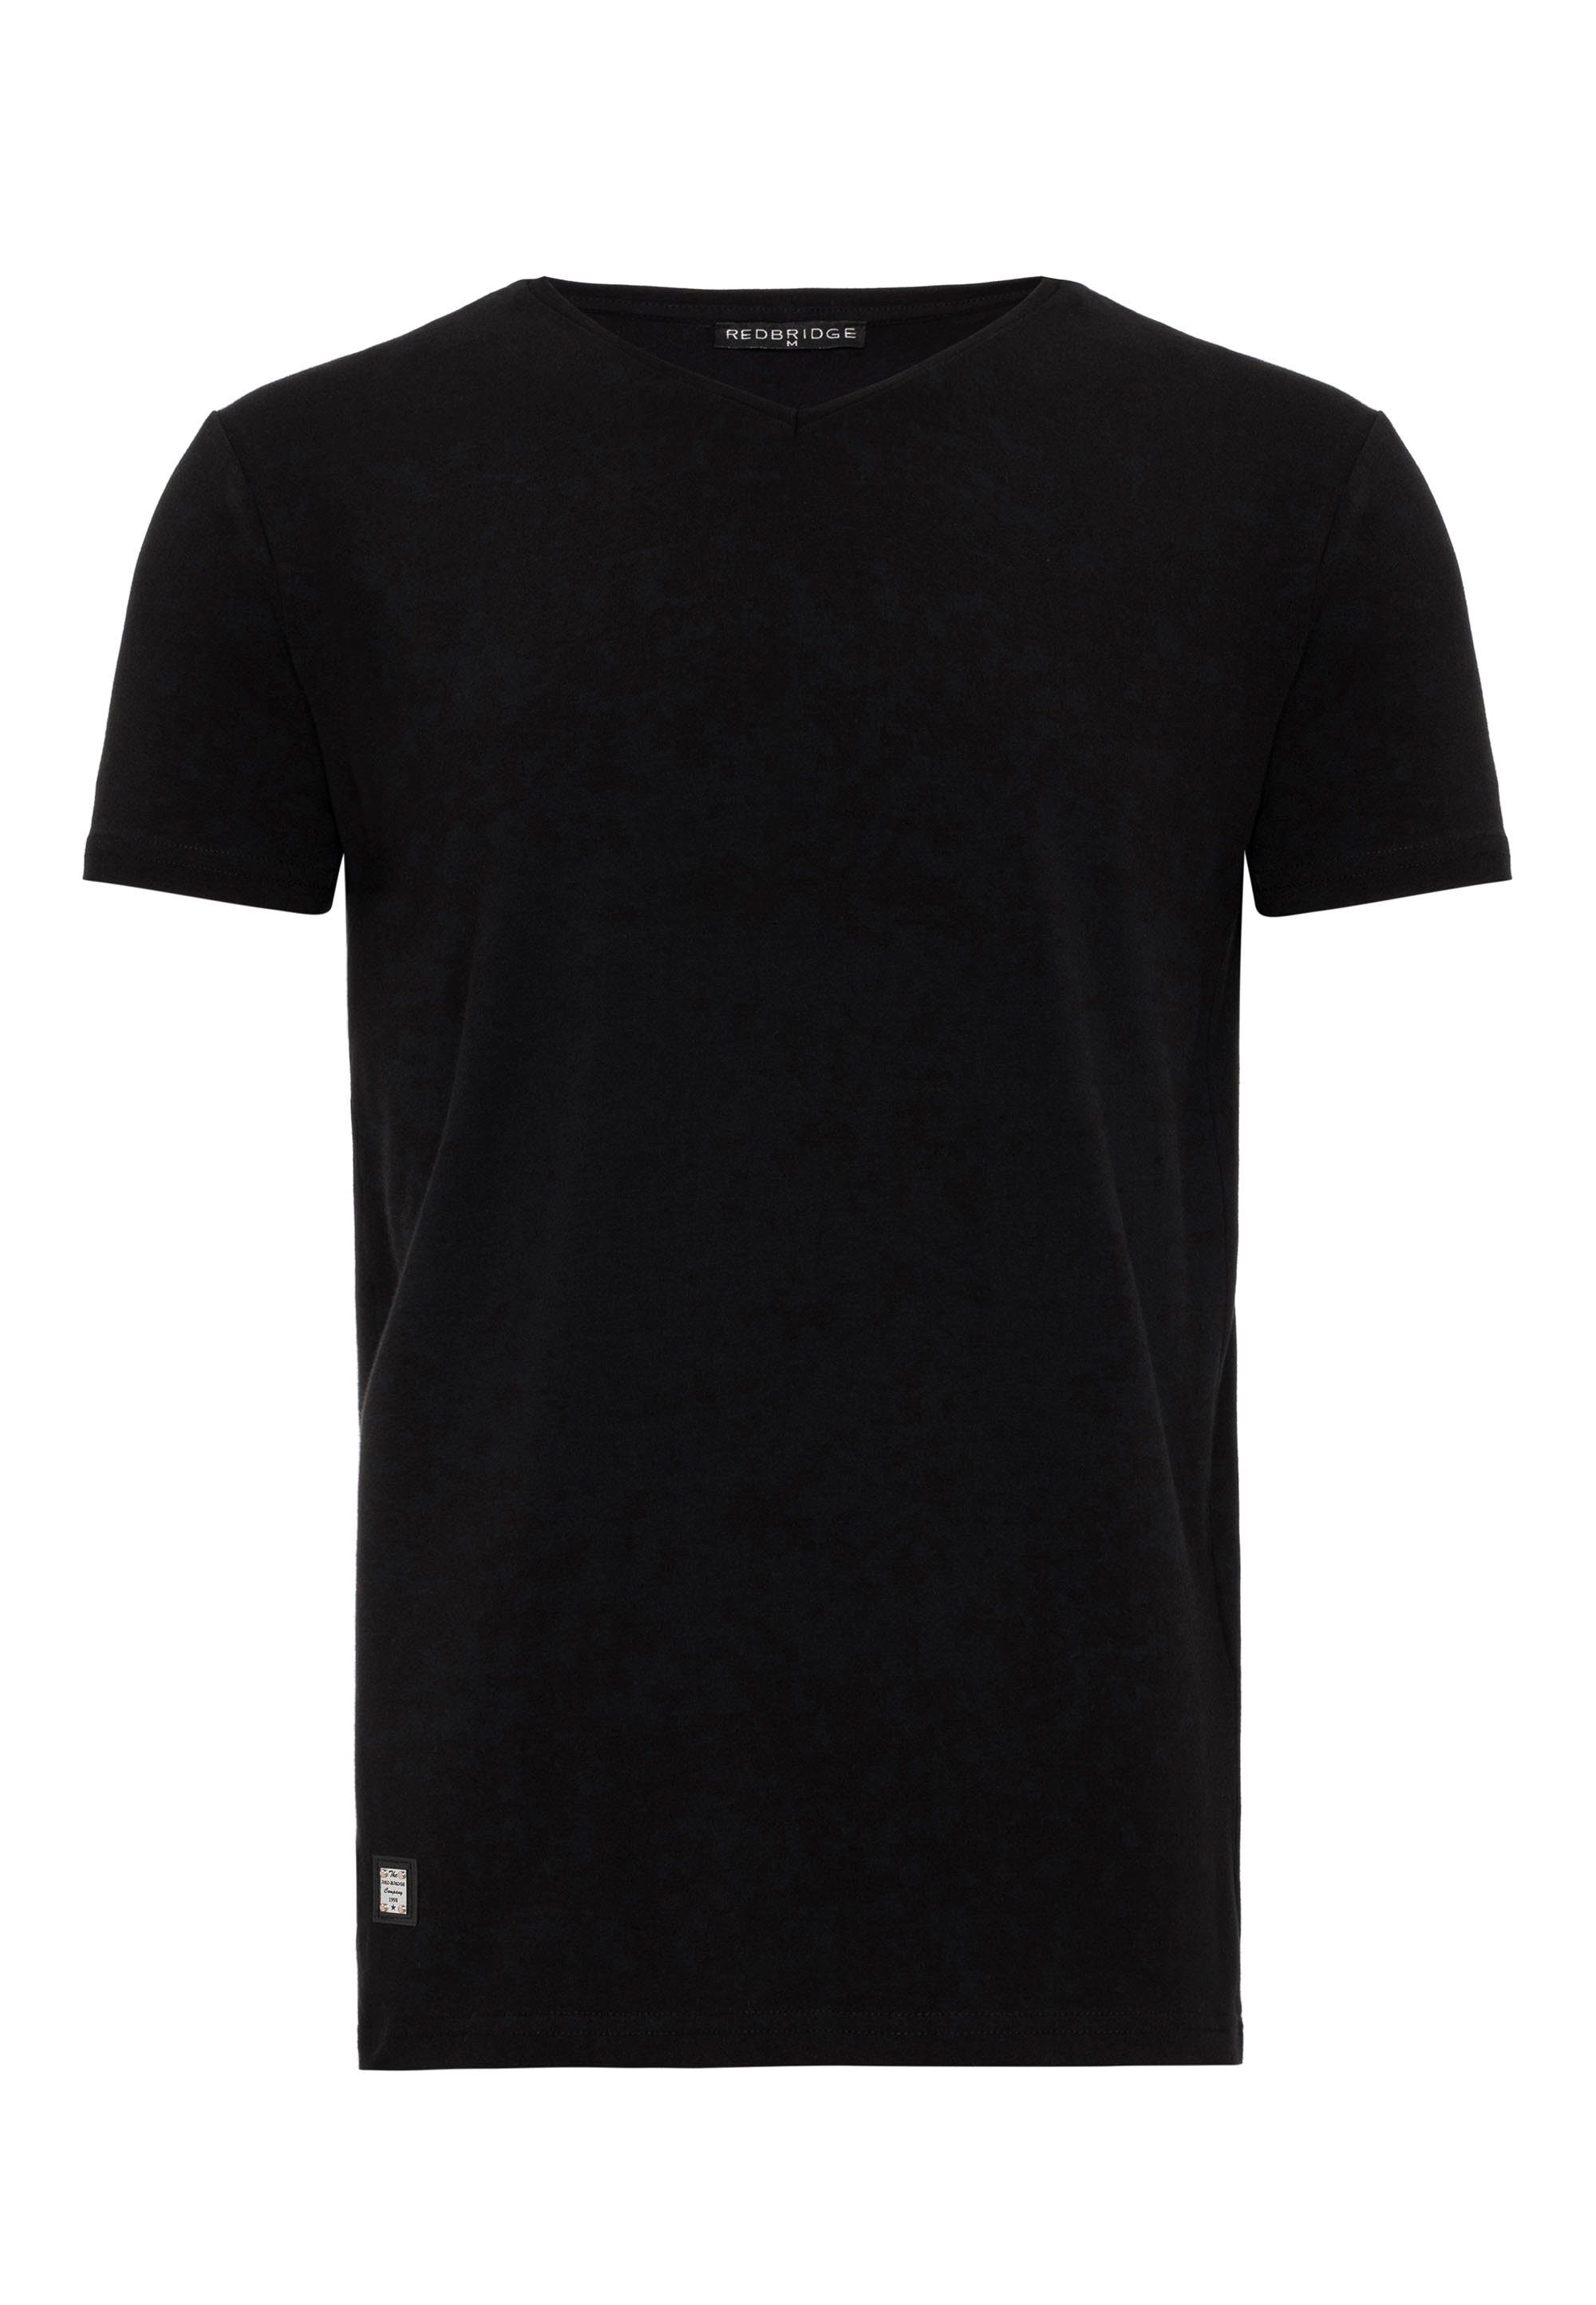 RedBridge T-Shirt Dayton in schwarz klassischem Design